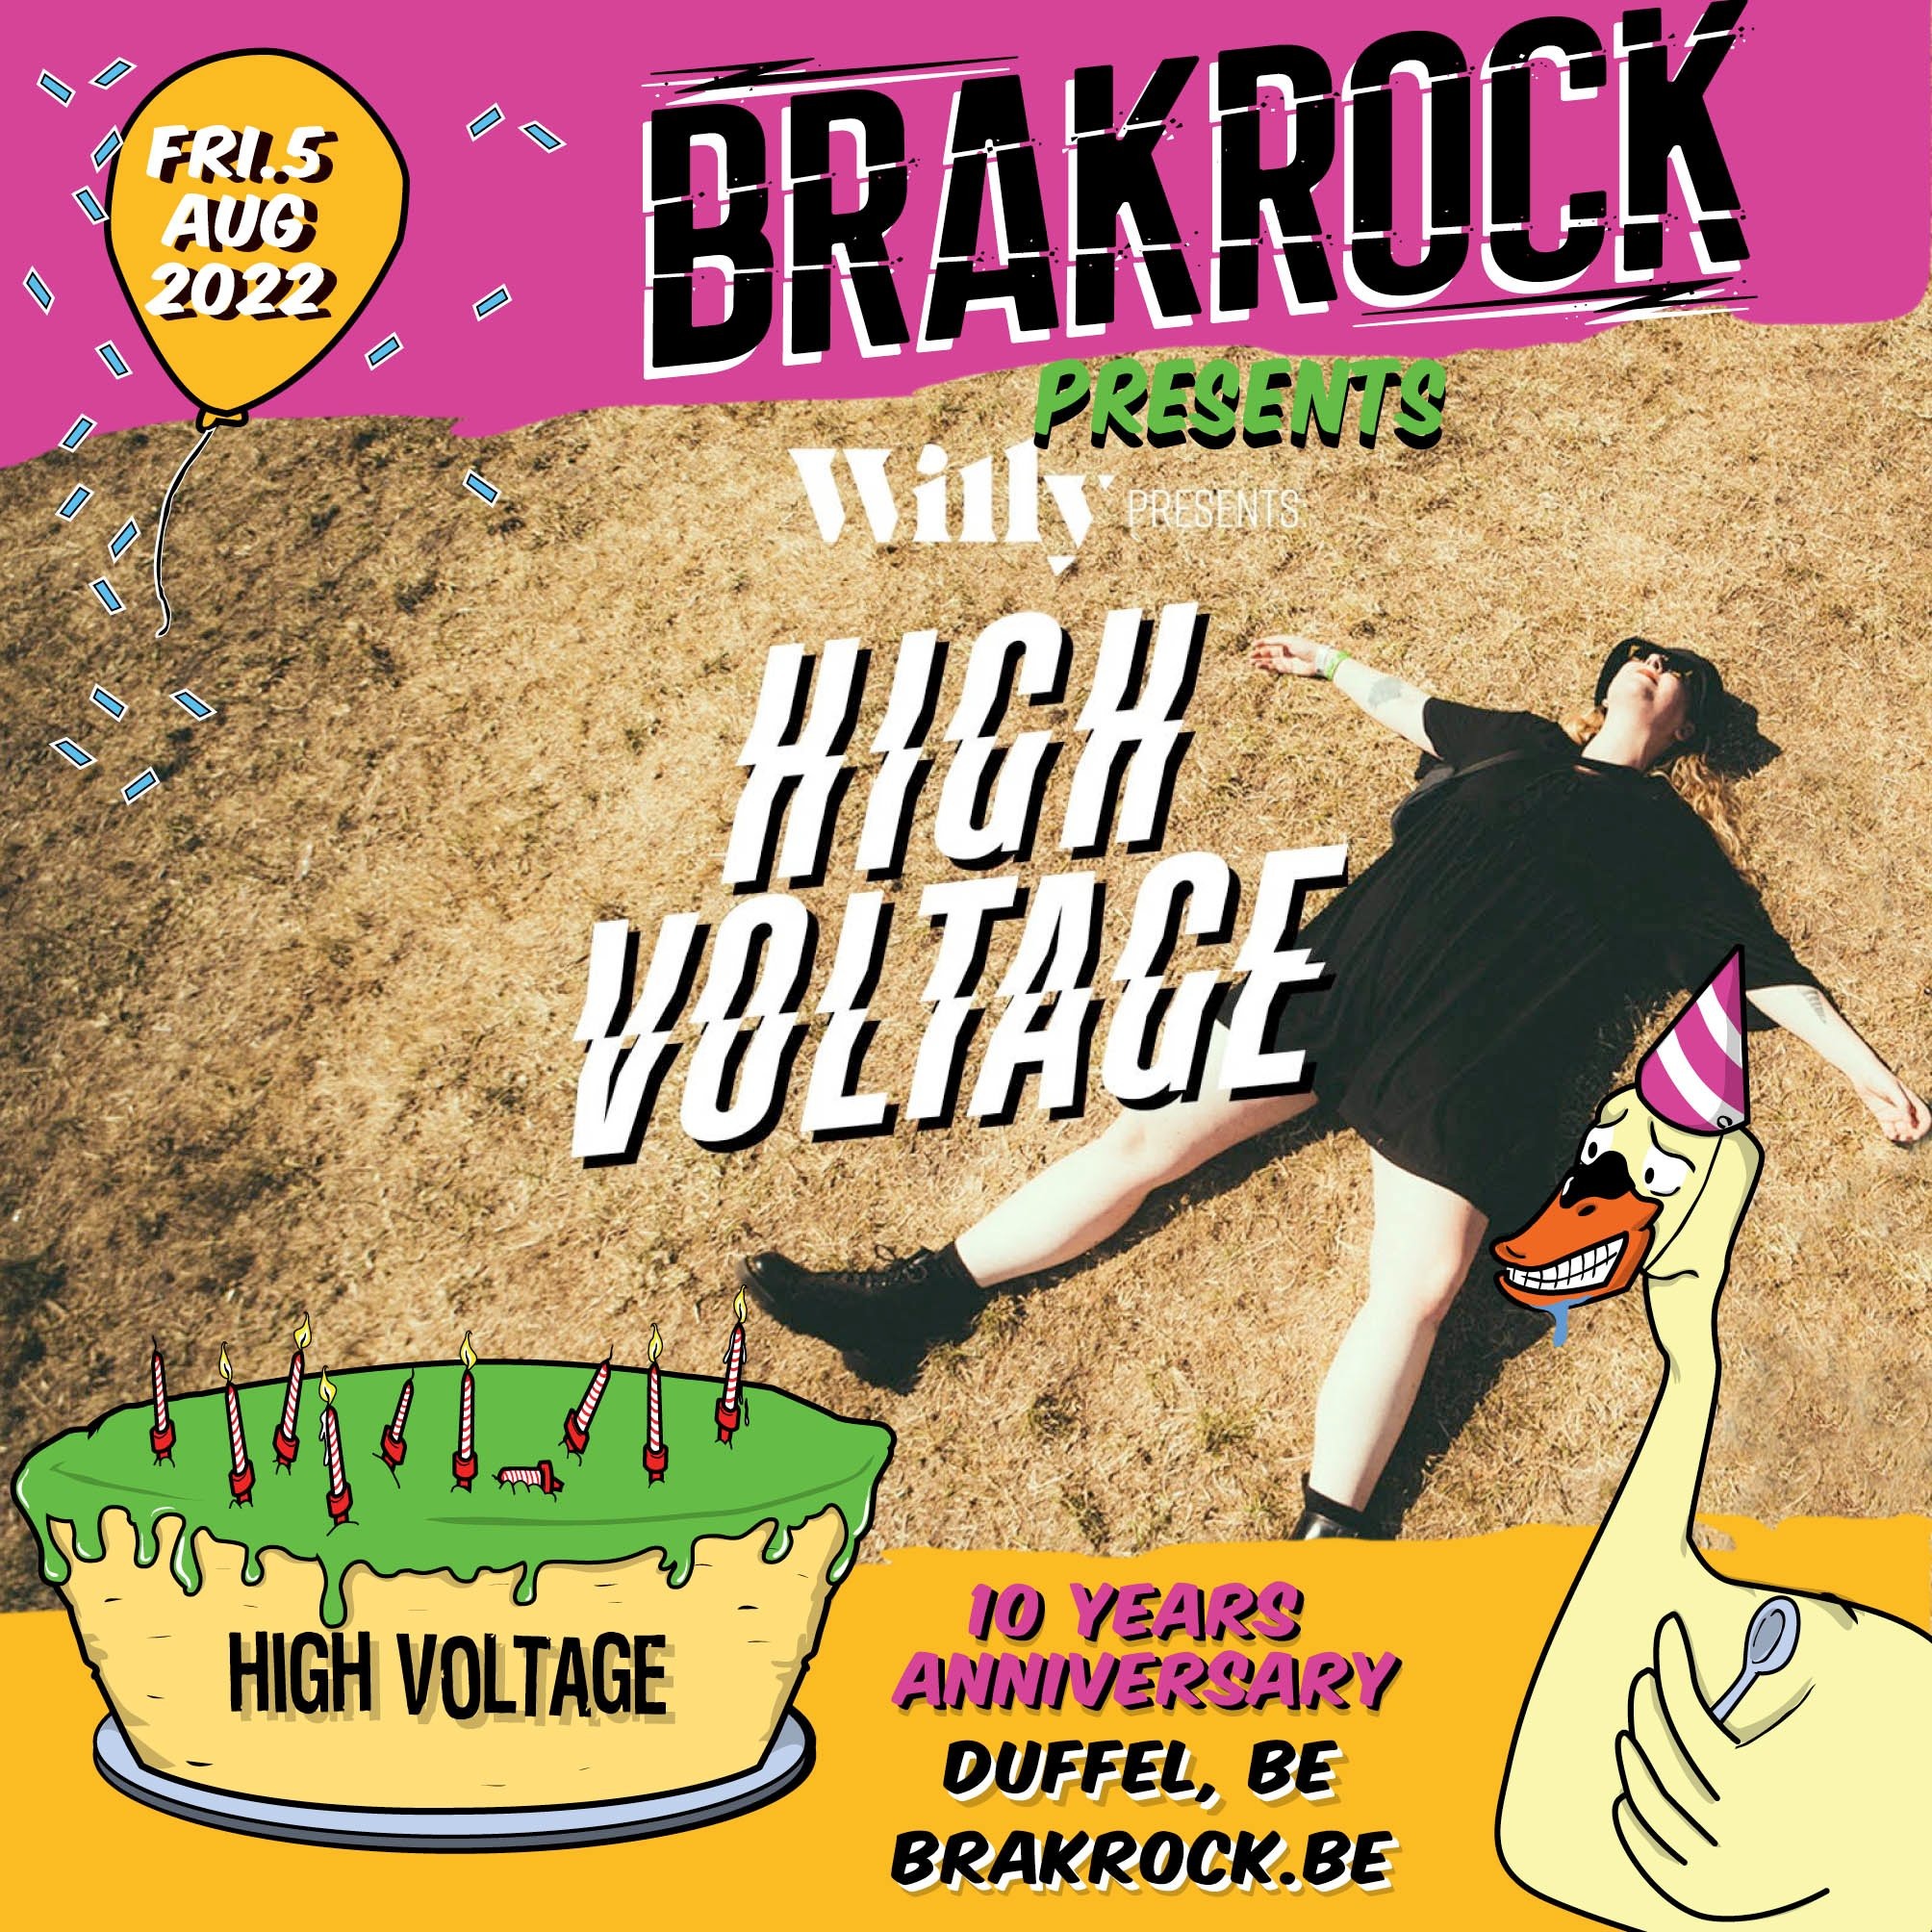 Brakrock high voltage